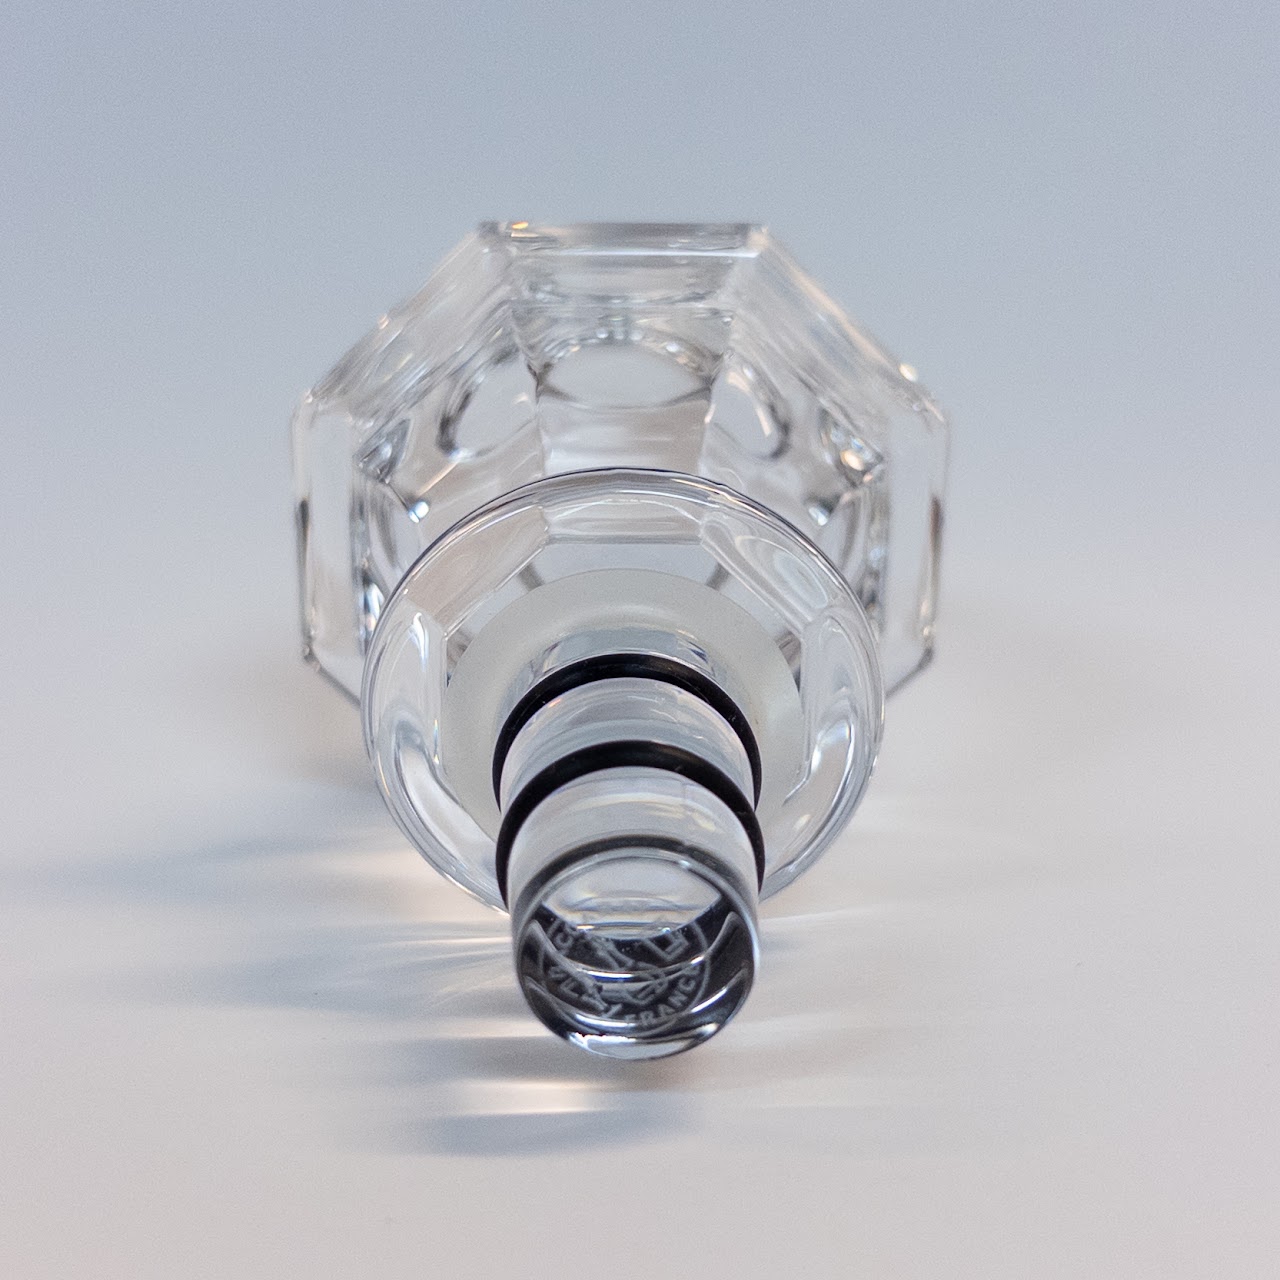 Baccarat Regence Crystal Bottle Stopper